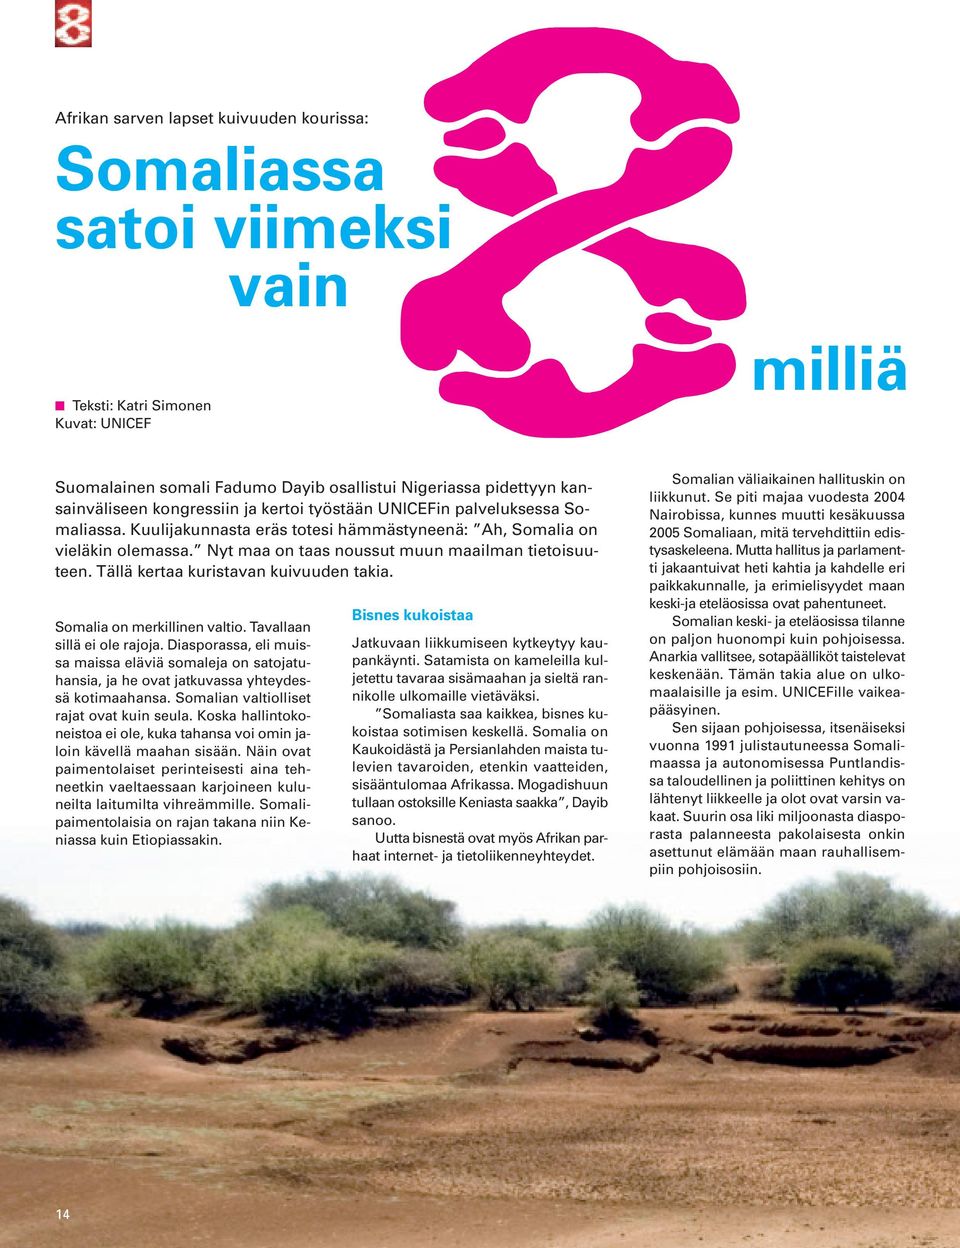 Tällä kertaa kuristavan kuivuuden takia. Somalia on merkillinen valtio. Tavallaan sillä ei ole rajoja.